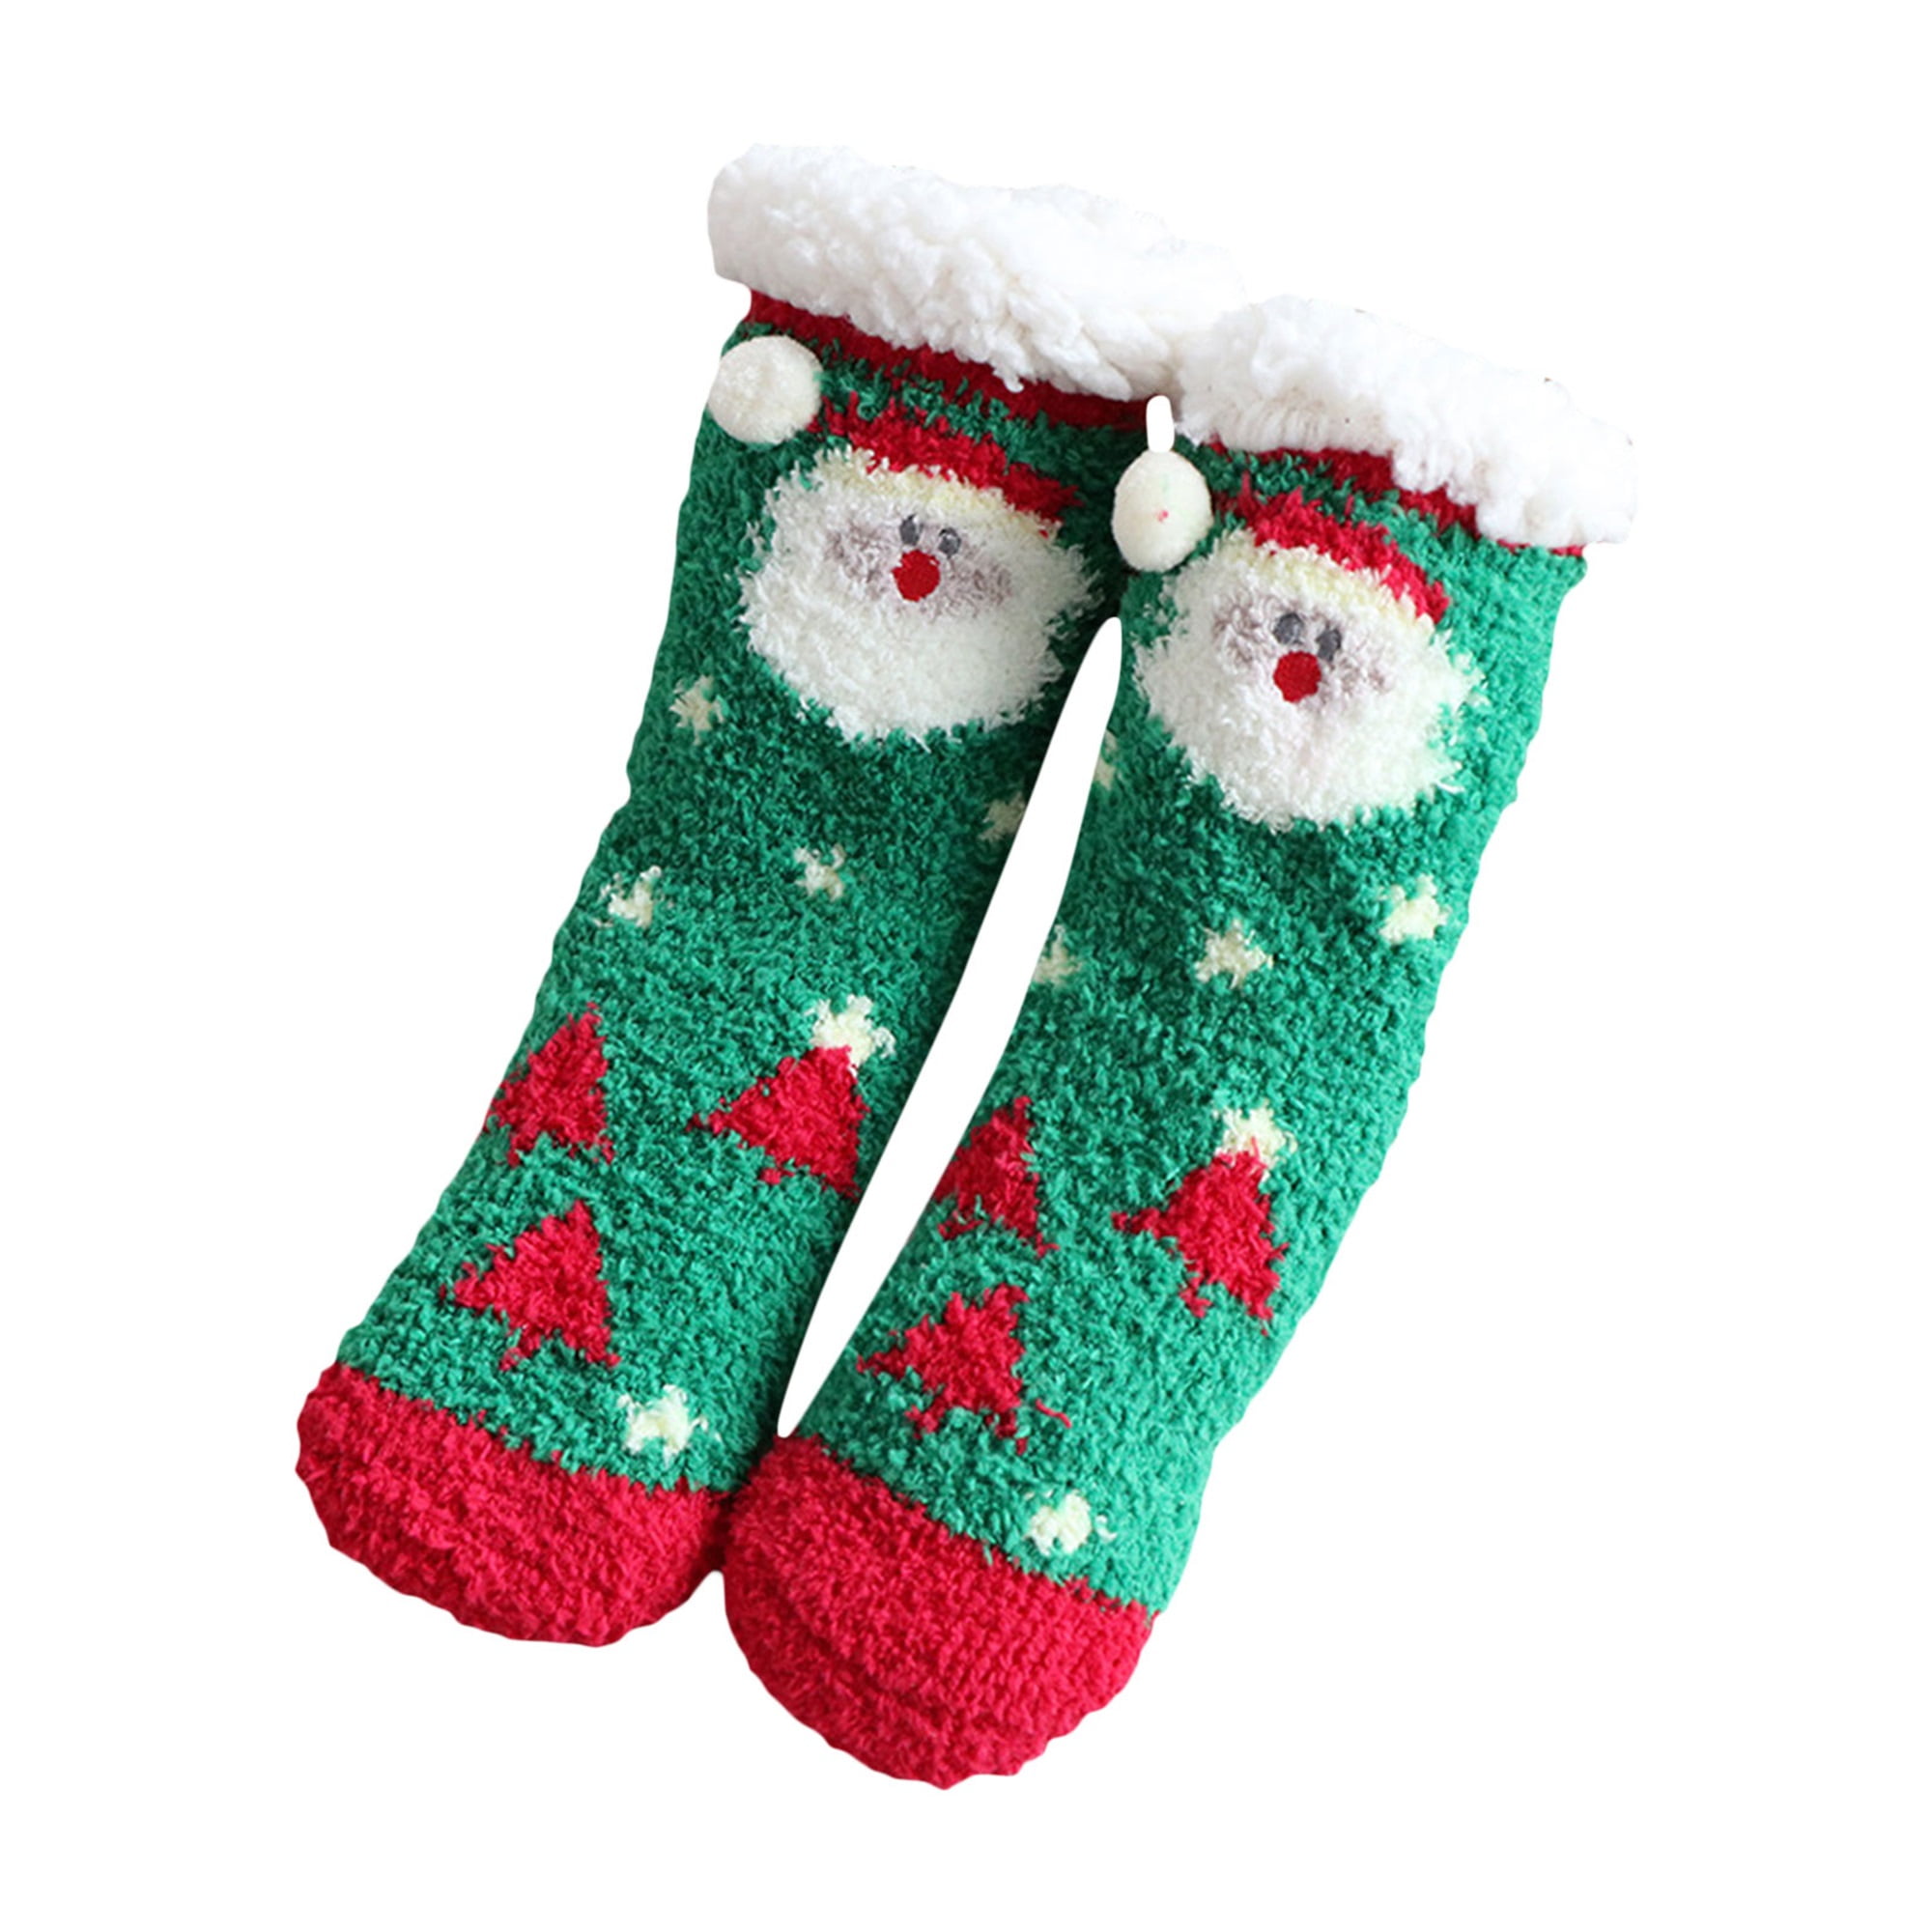 Mean Girls Socks Custom Photo Socks Christmas Socks Merry Christmas Gift